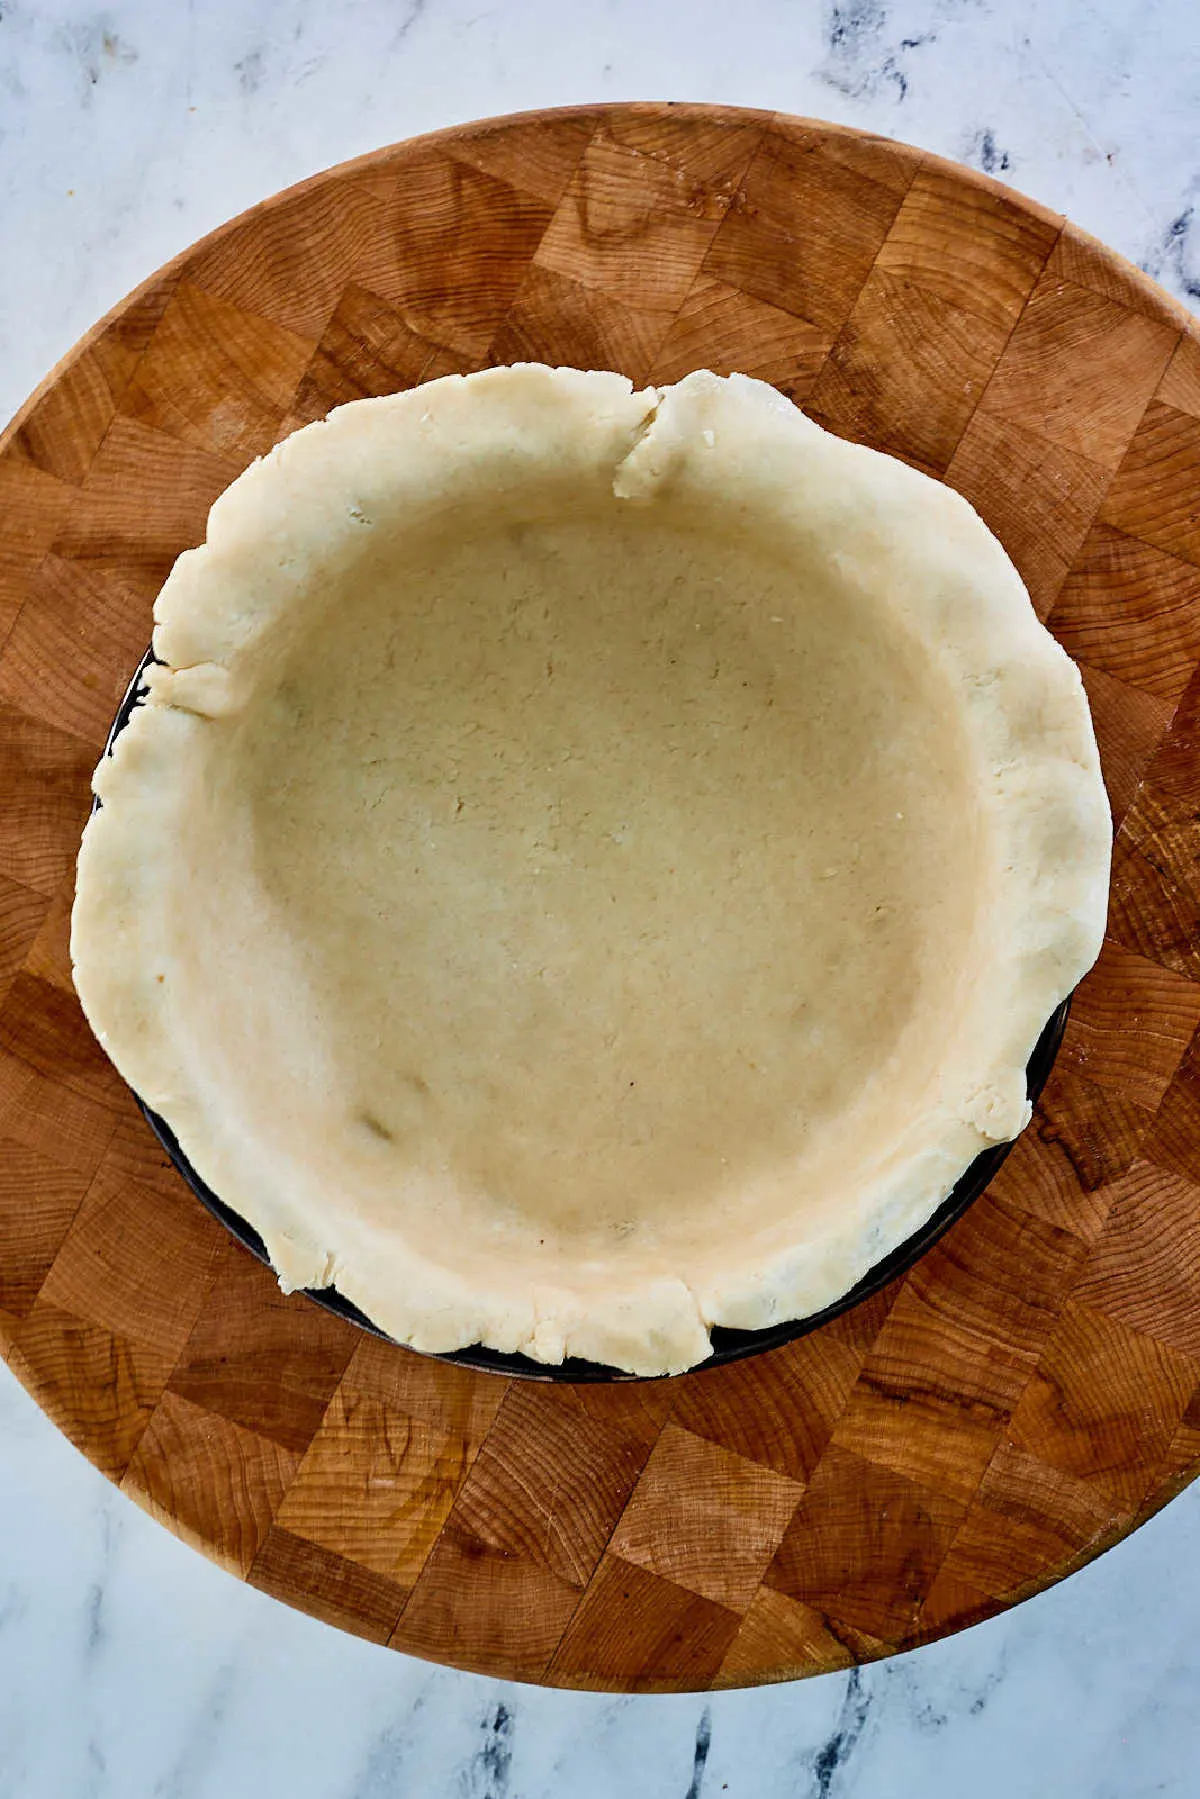 Lard pie crust in pie pan ready for filling.